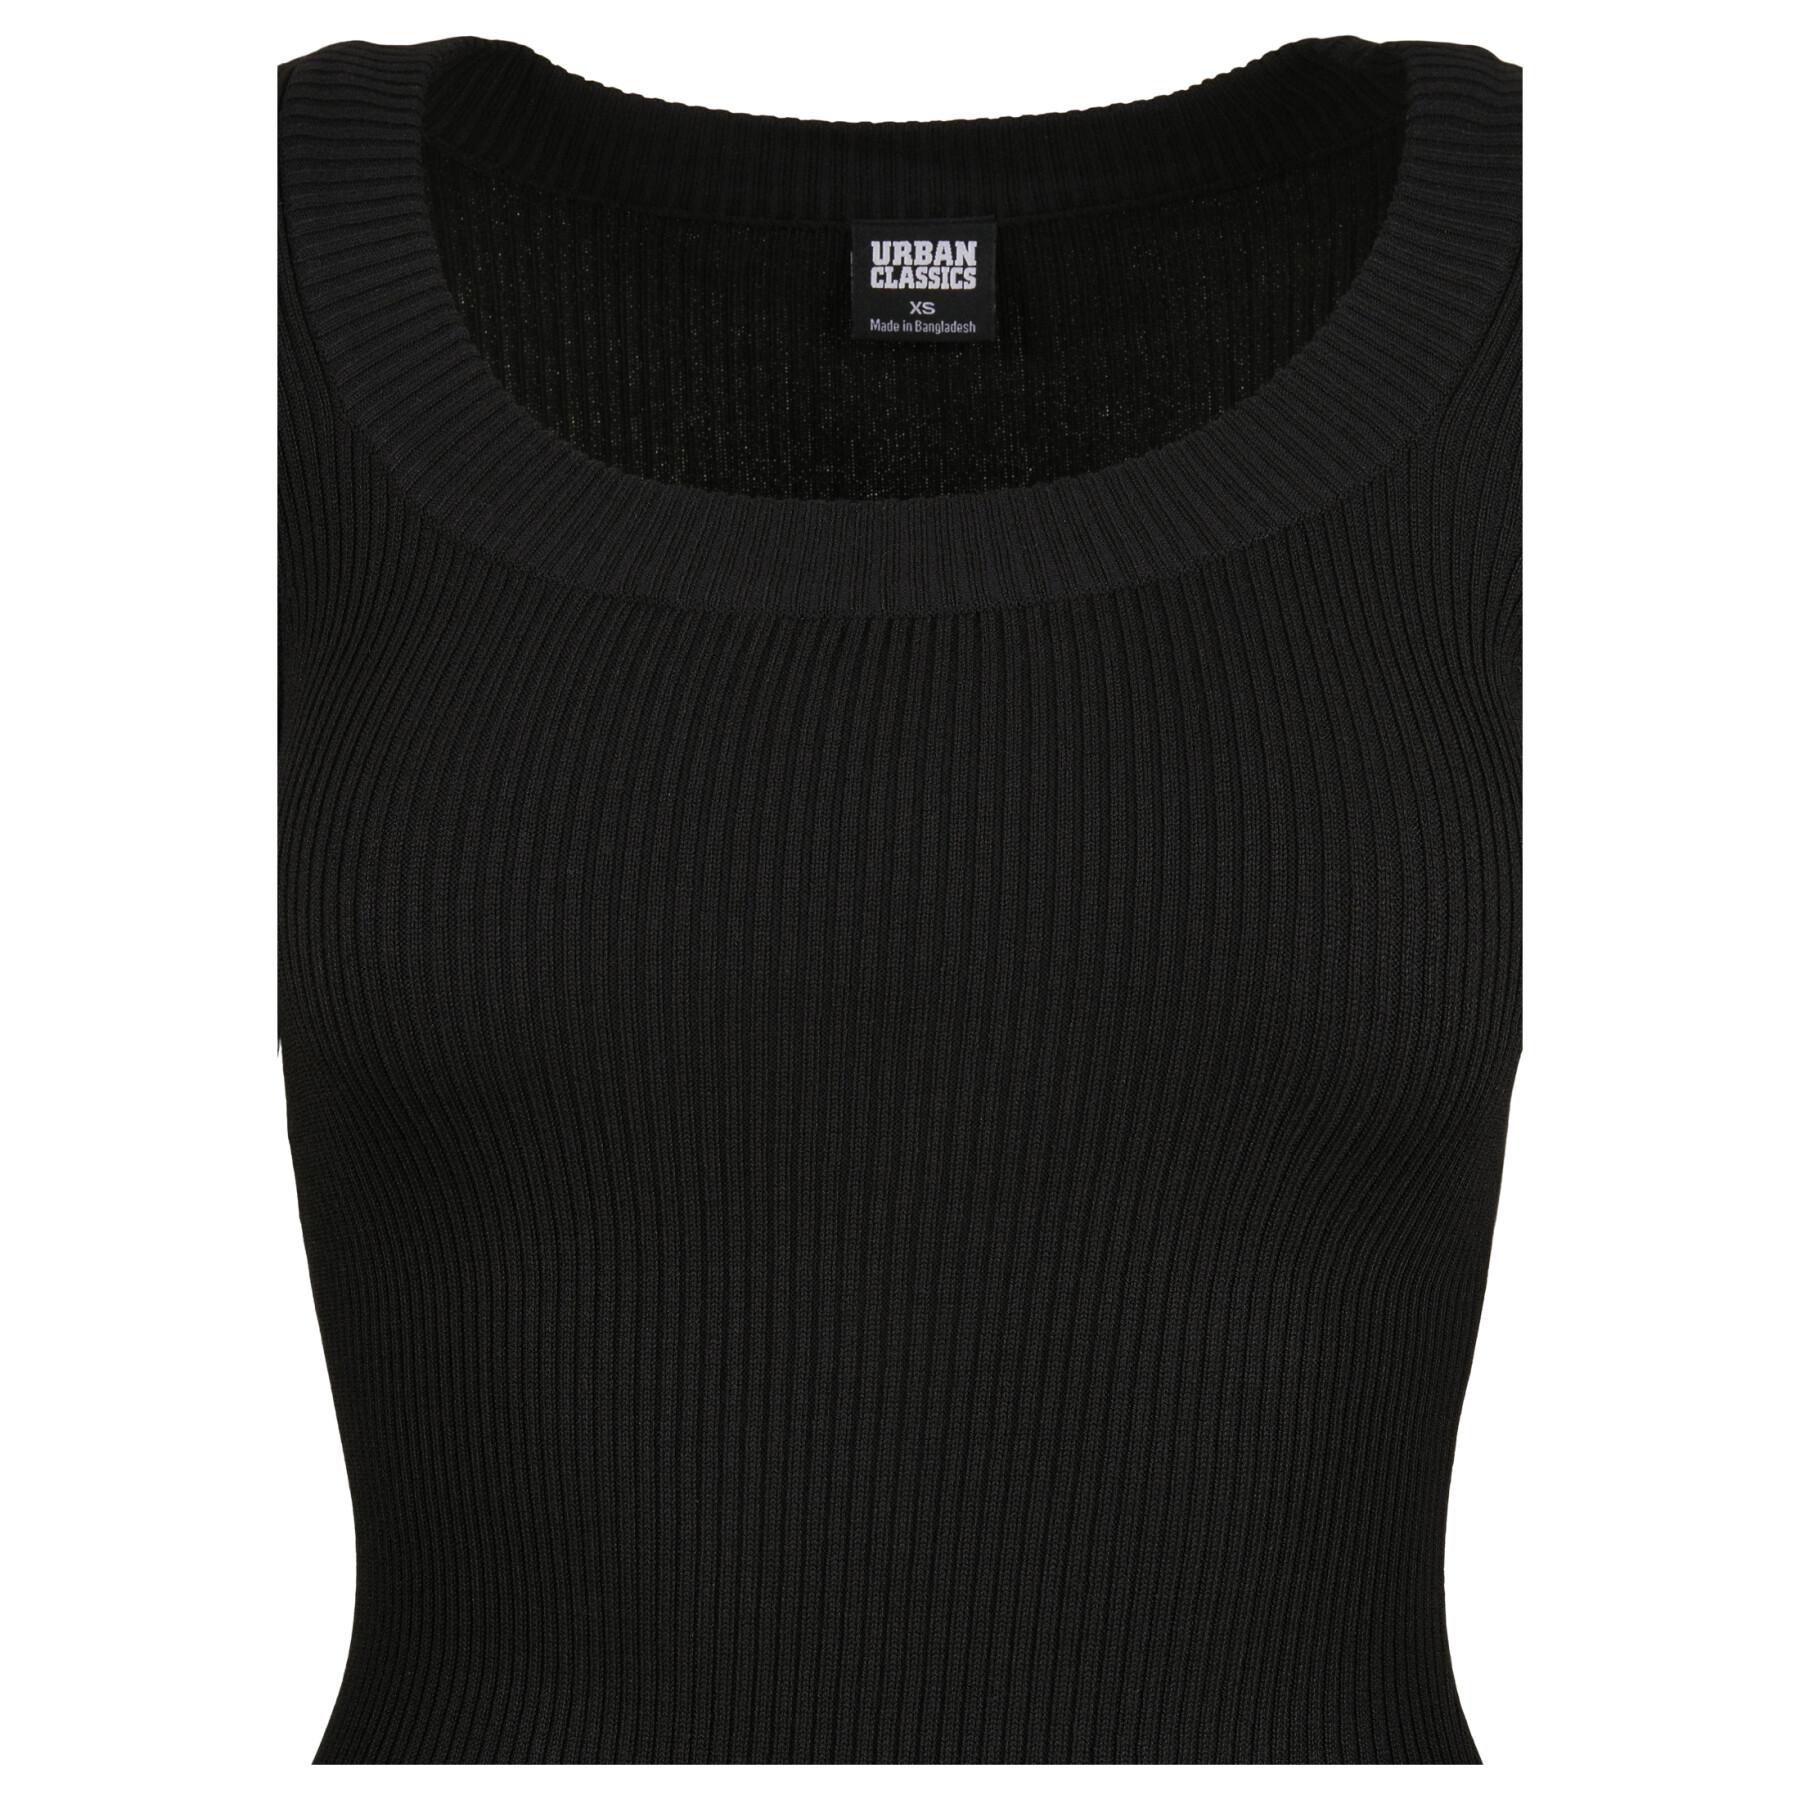 Pullover für Frauen Urban Classics wide neckline (GT)